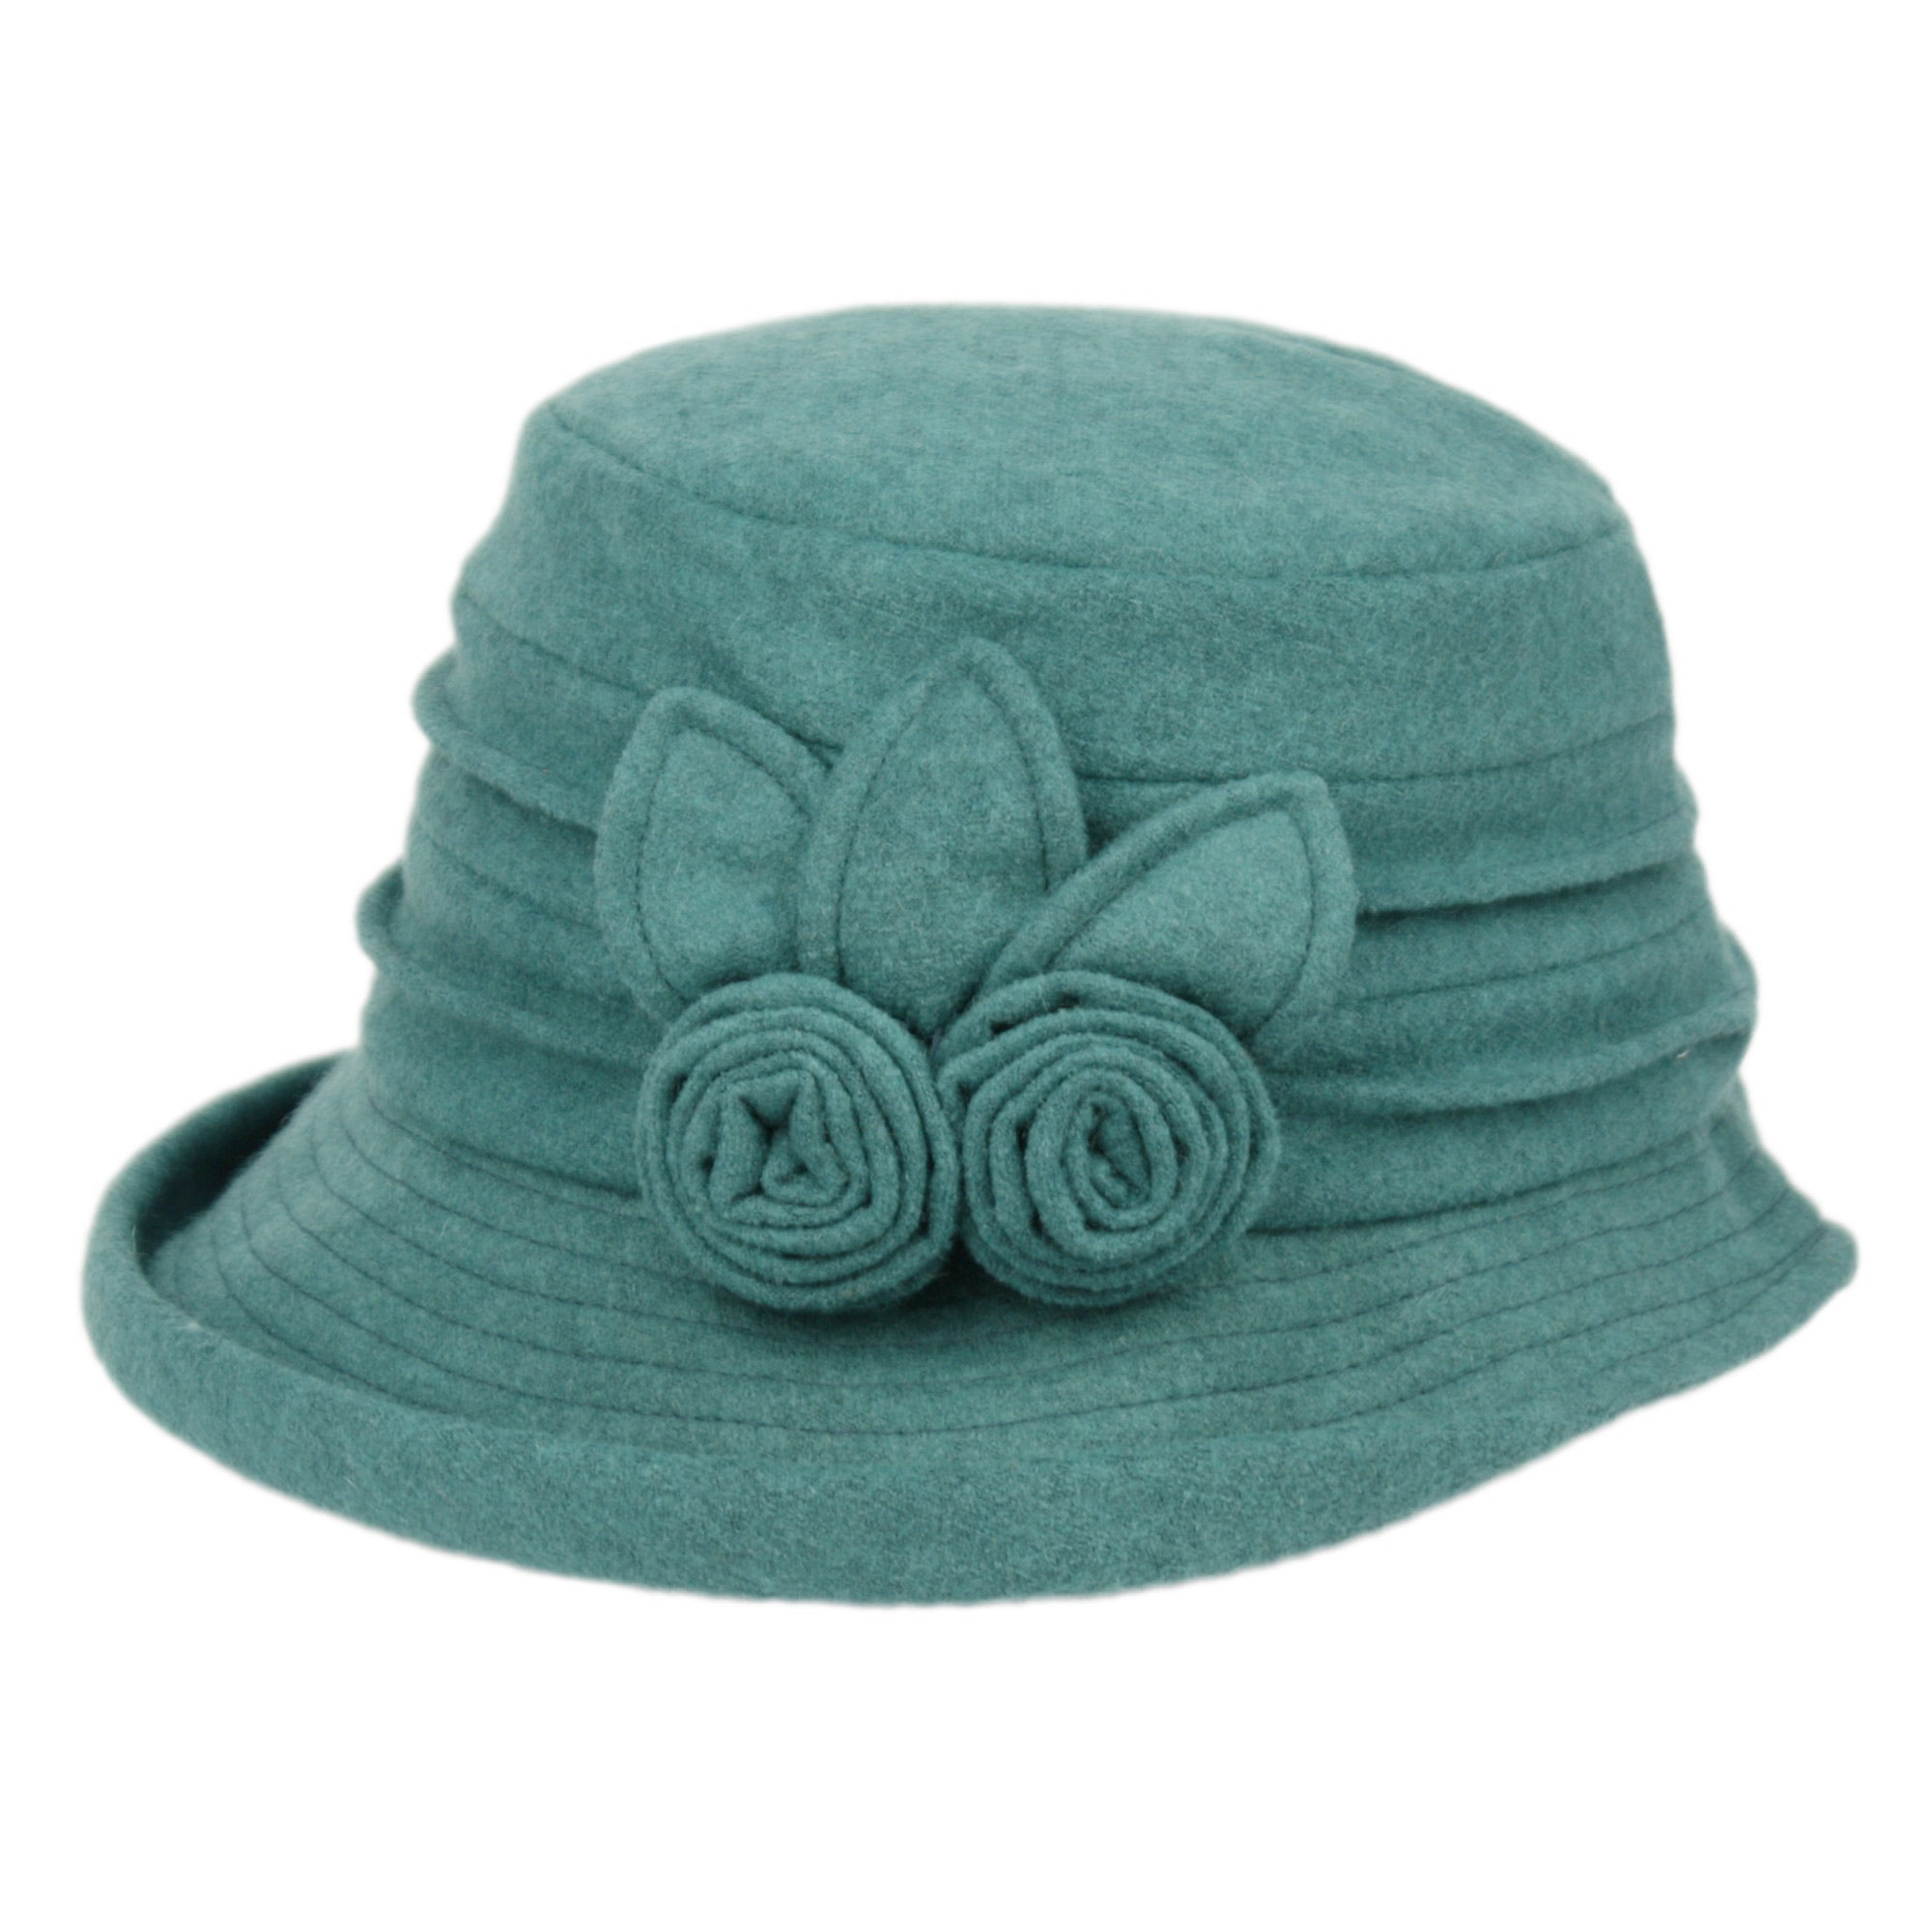 Women's Wool Flower Cloche Hat, Women's Winter Bucket Hat, Vintage Derby Hat Teal